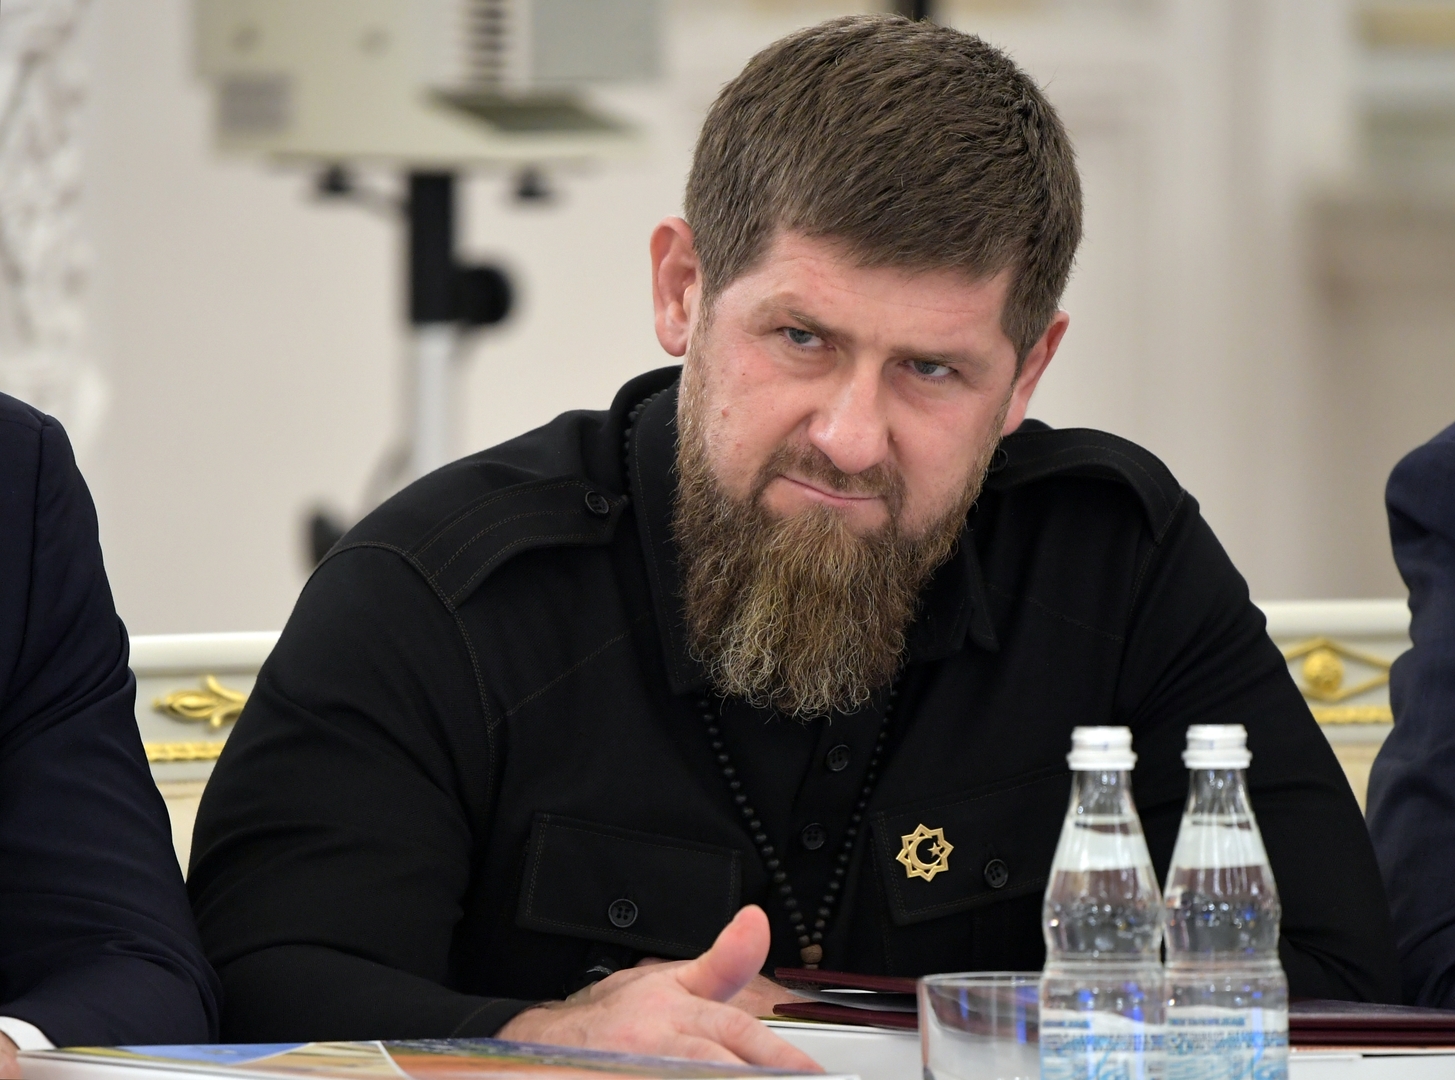 قديروف ينتقد الشاب الشيشاني الذي اشتبك مع قوات الأمن في مظاهرات موسكو